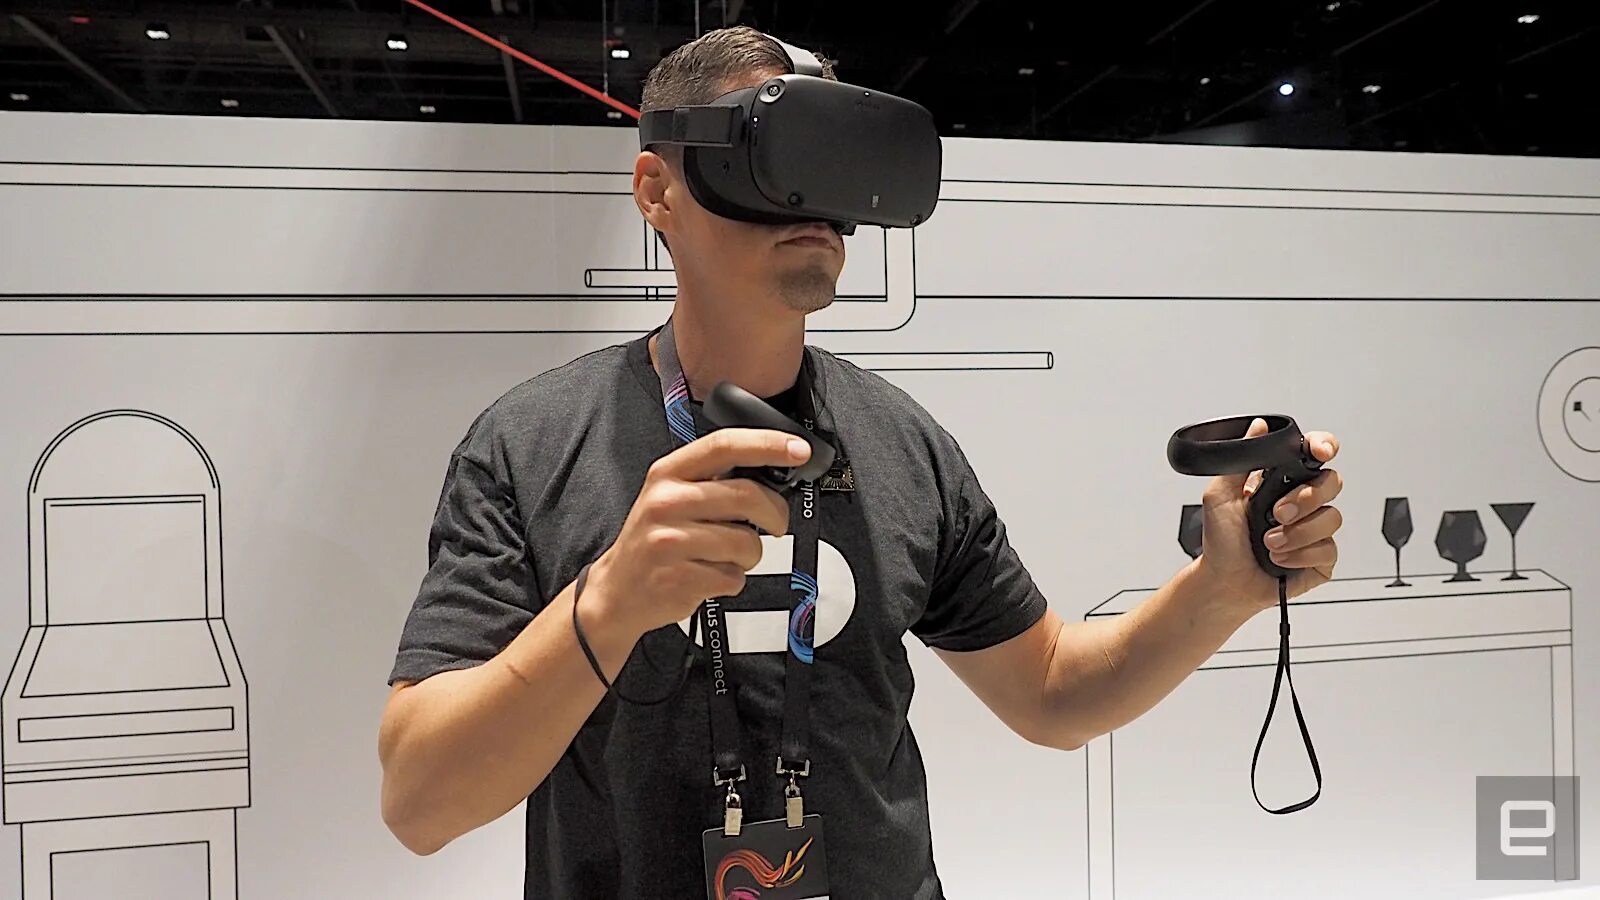 VR очки Oculus Rift. ВР очки Oculus 2. Шлем Oculus Rift s. ВР шлем Окулус 2.